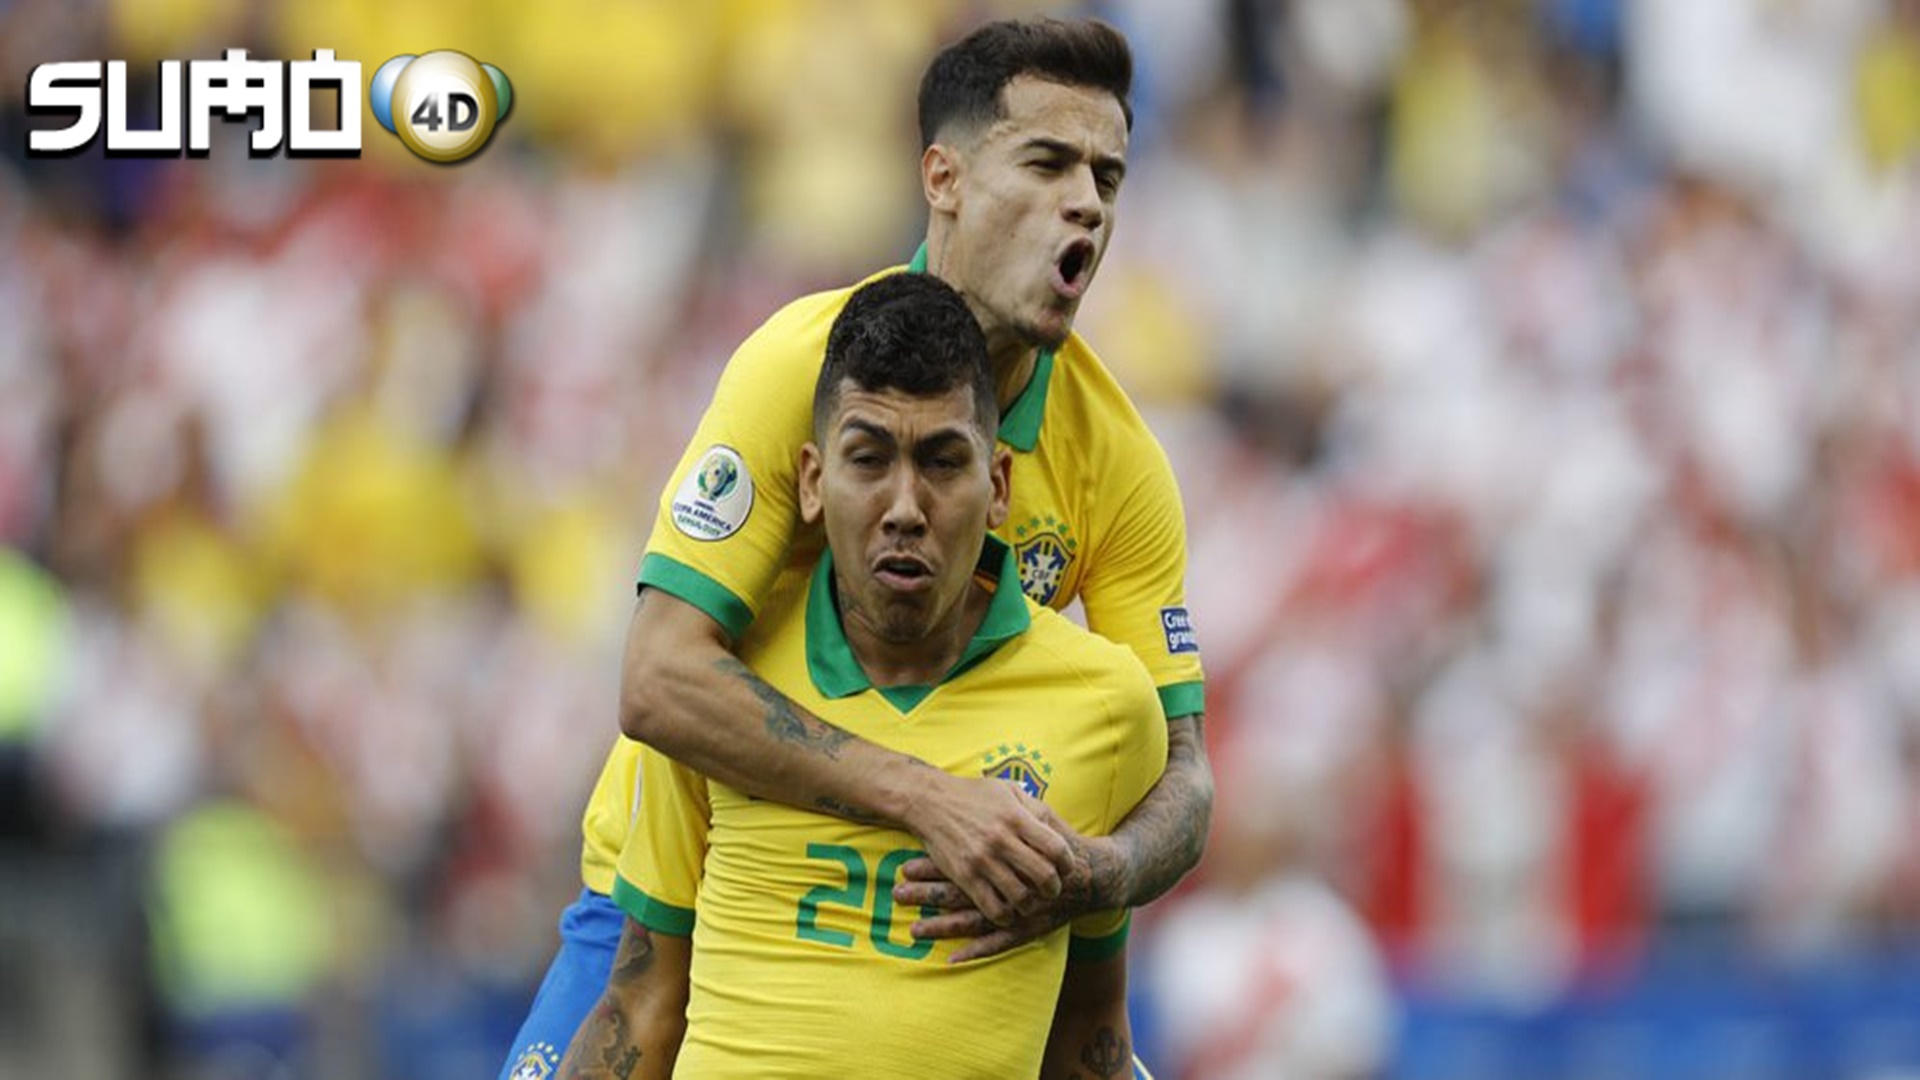 Hasil Pertandingan Brasil vs Peru: Skor 3-1